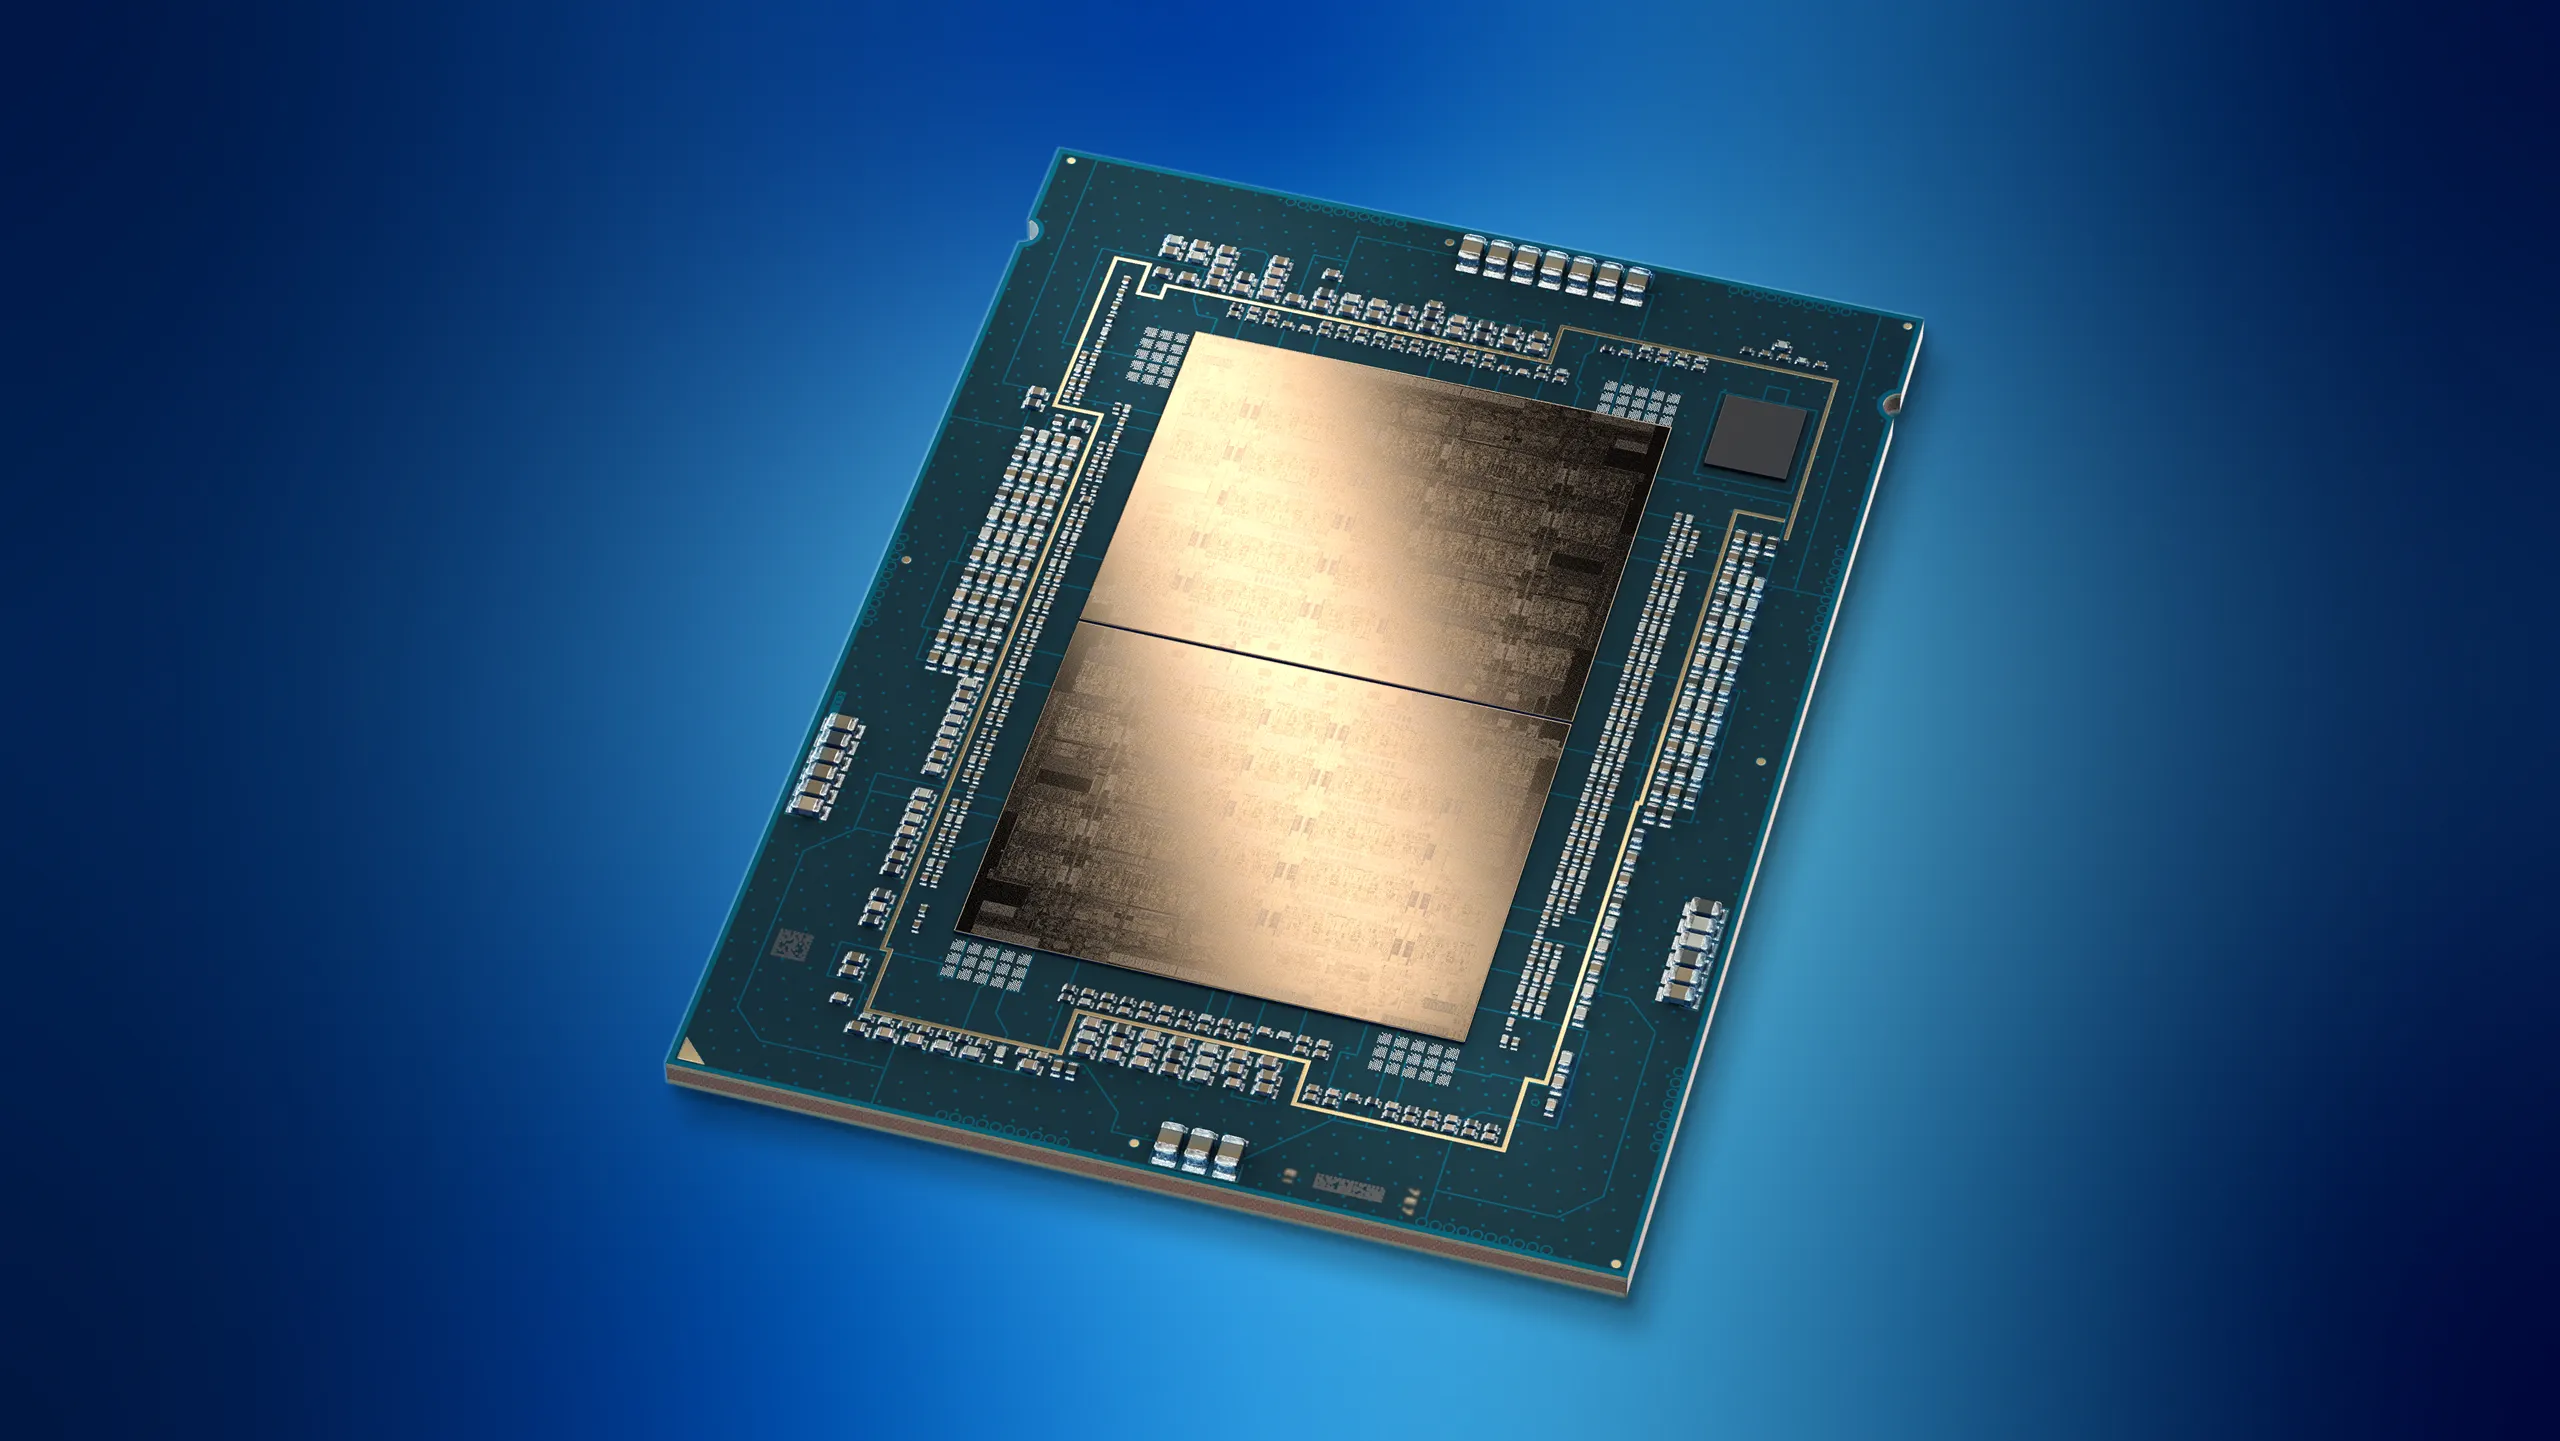 Intel ra mắt vi xử lý Intel Xeon thế hệ 5, hiệu năng AI vượt trội